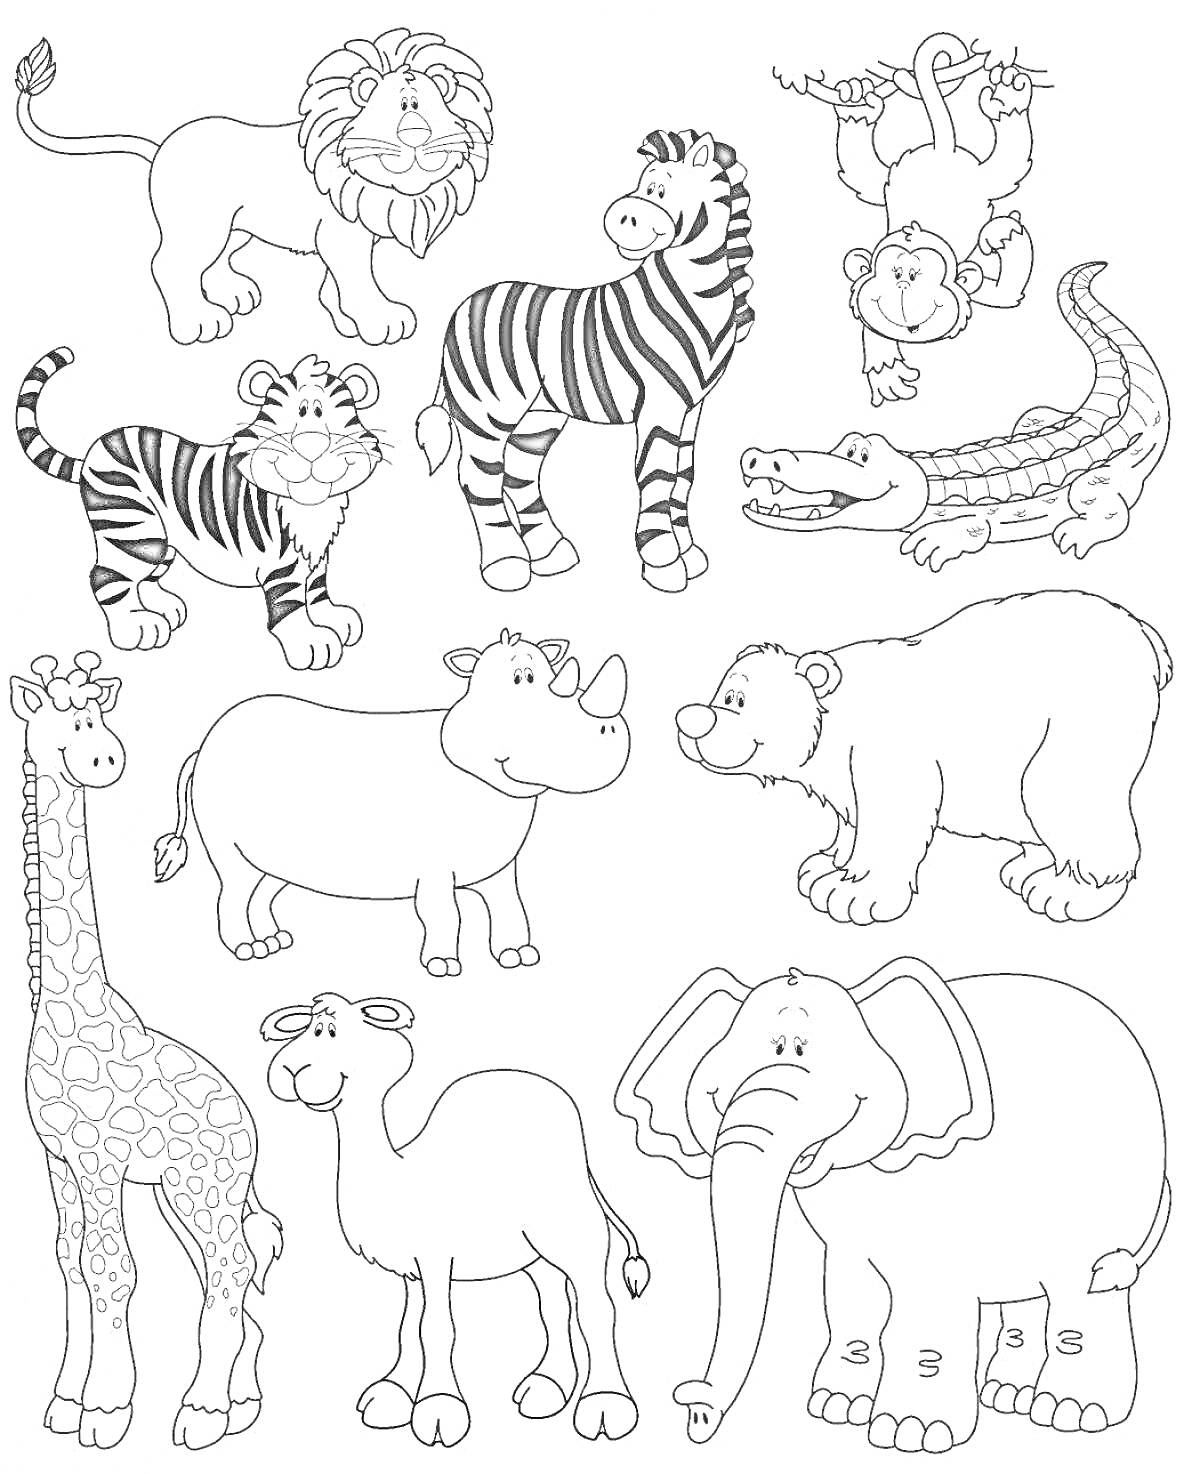 Раскраска Лев, обезьяна, зебра, крокодил, тигр, носорог, медведь, жираф, верблюд, слон